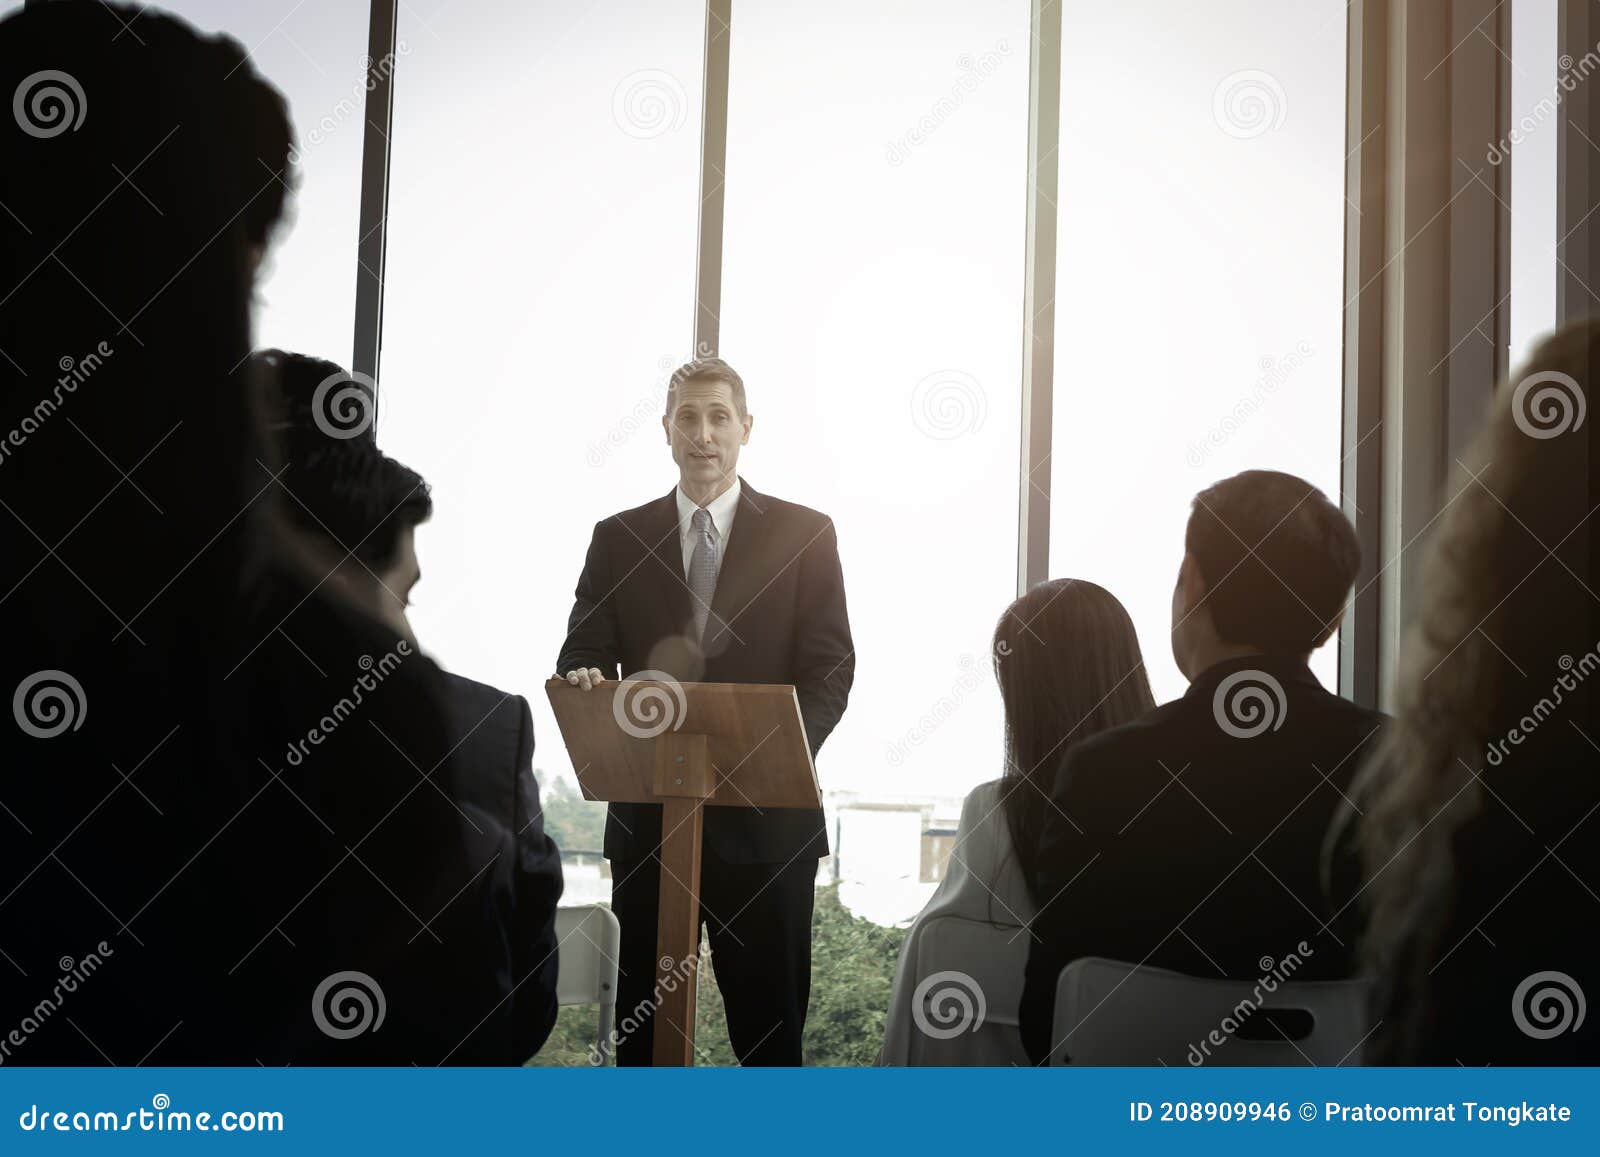 give a speech meeting